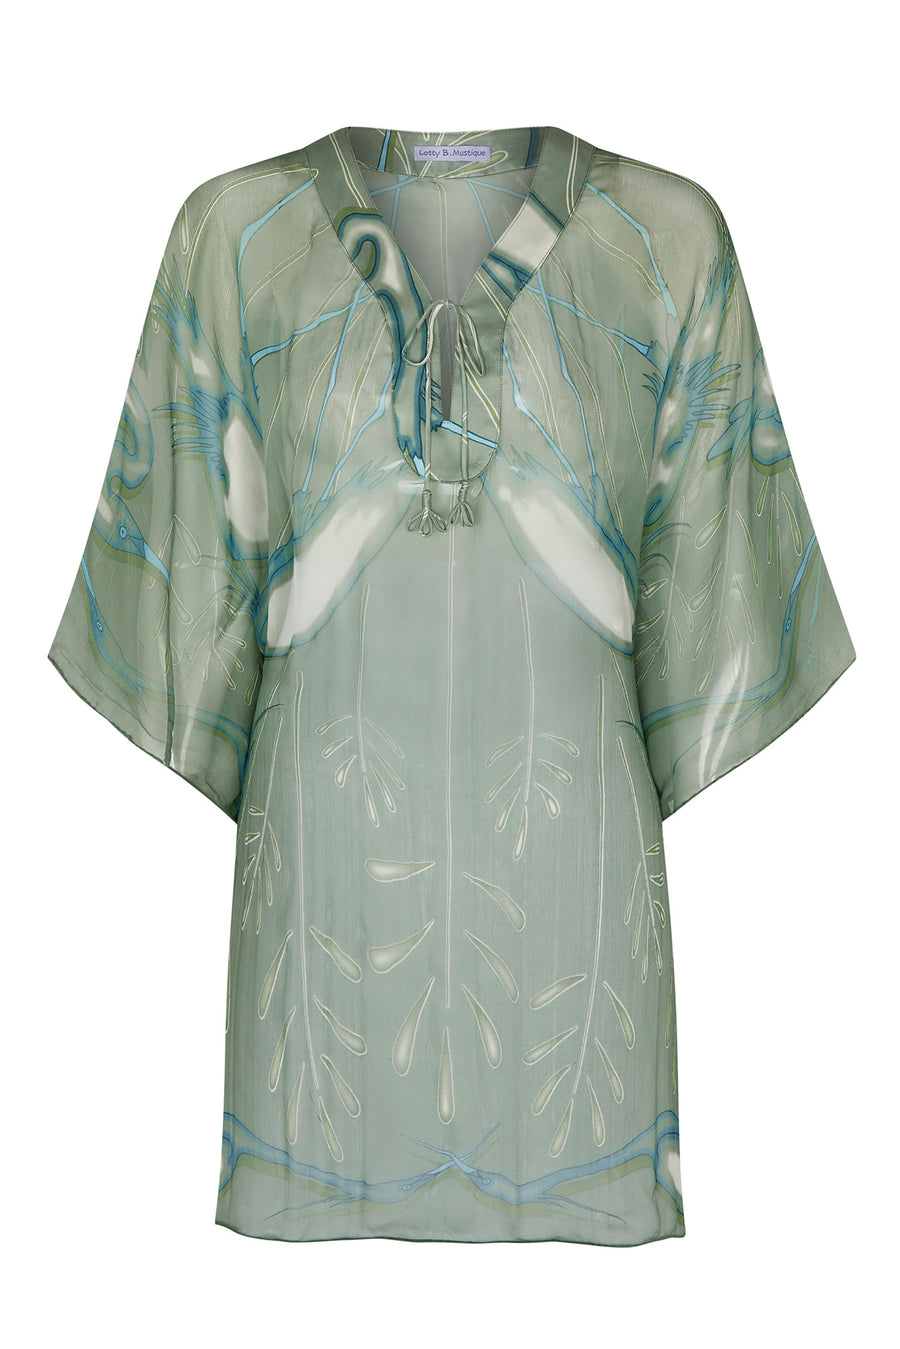 Designer beach wear, chiffon silk Cosima Kaftan in lichen green Egret design, Cotton House Hotel, Mustique